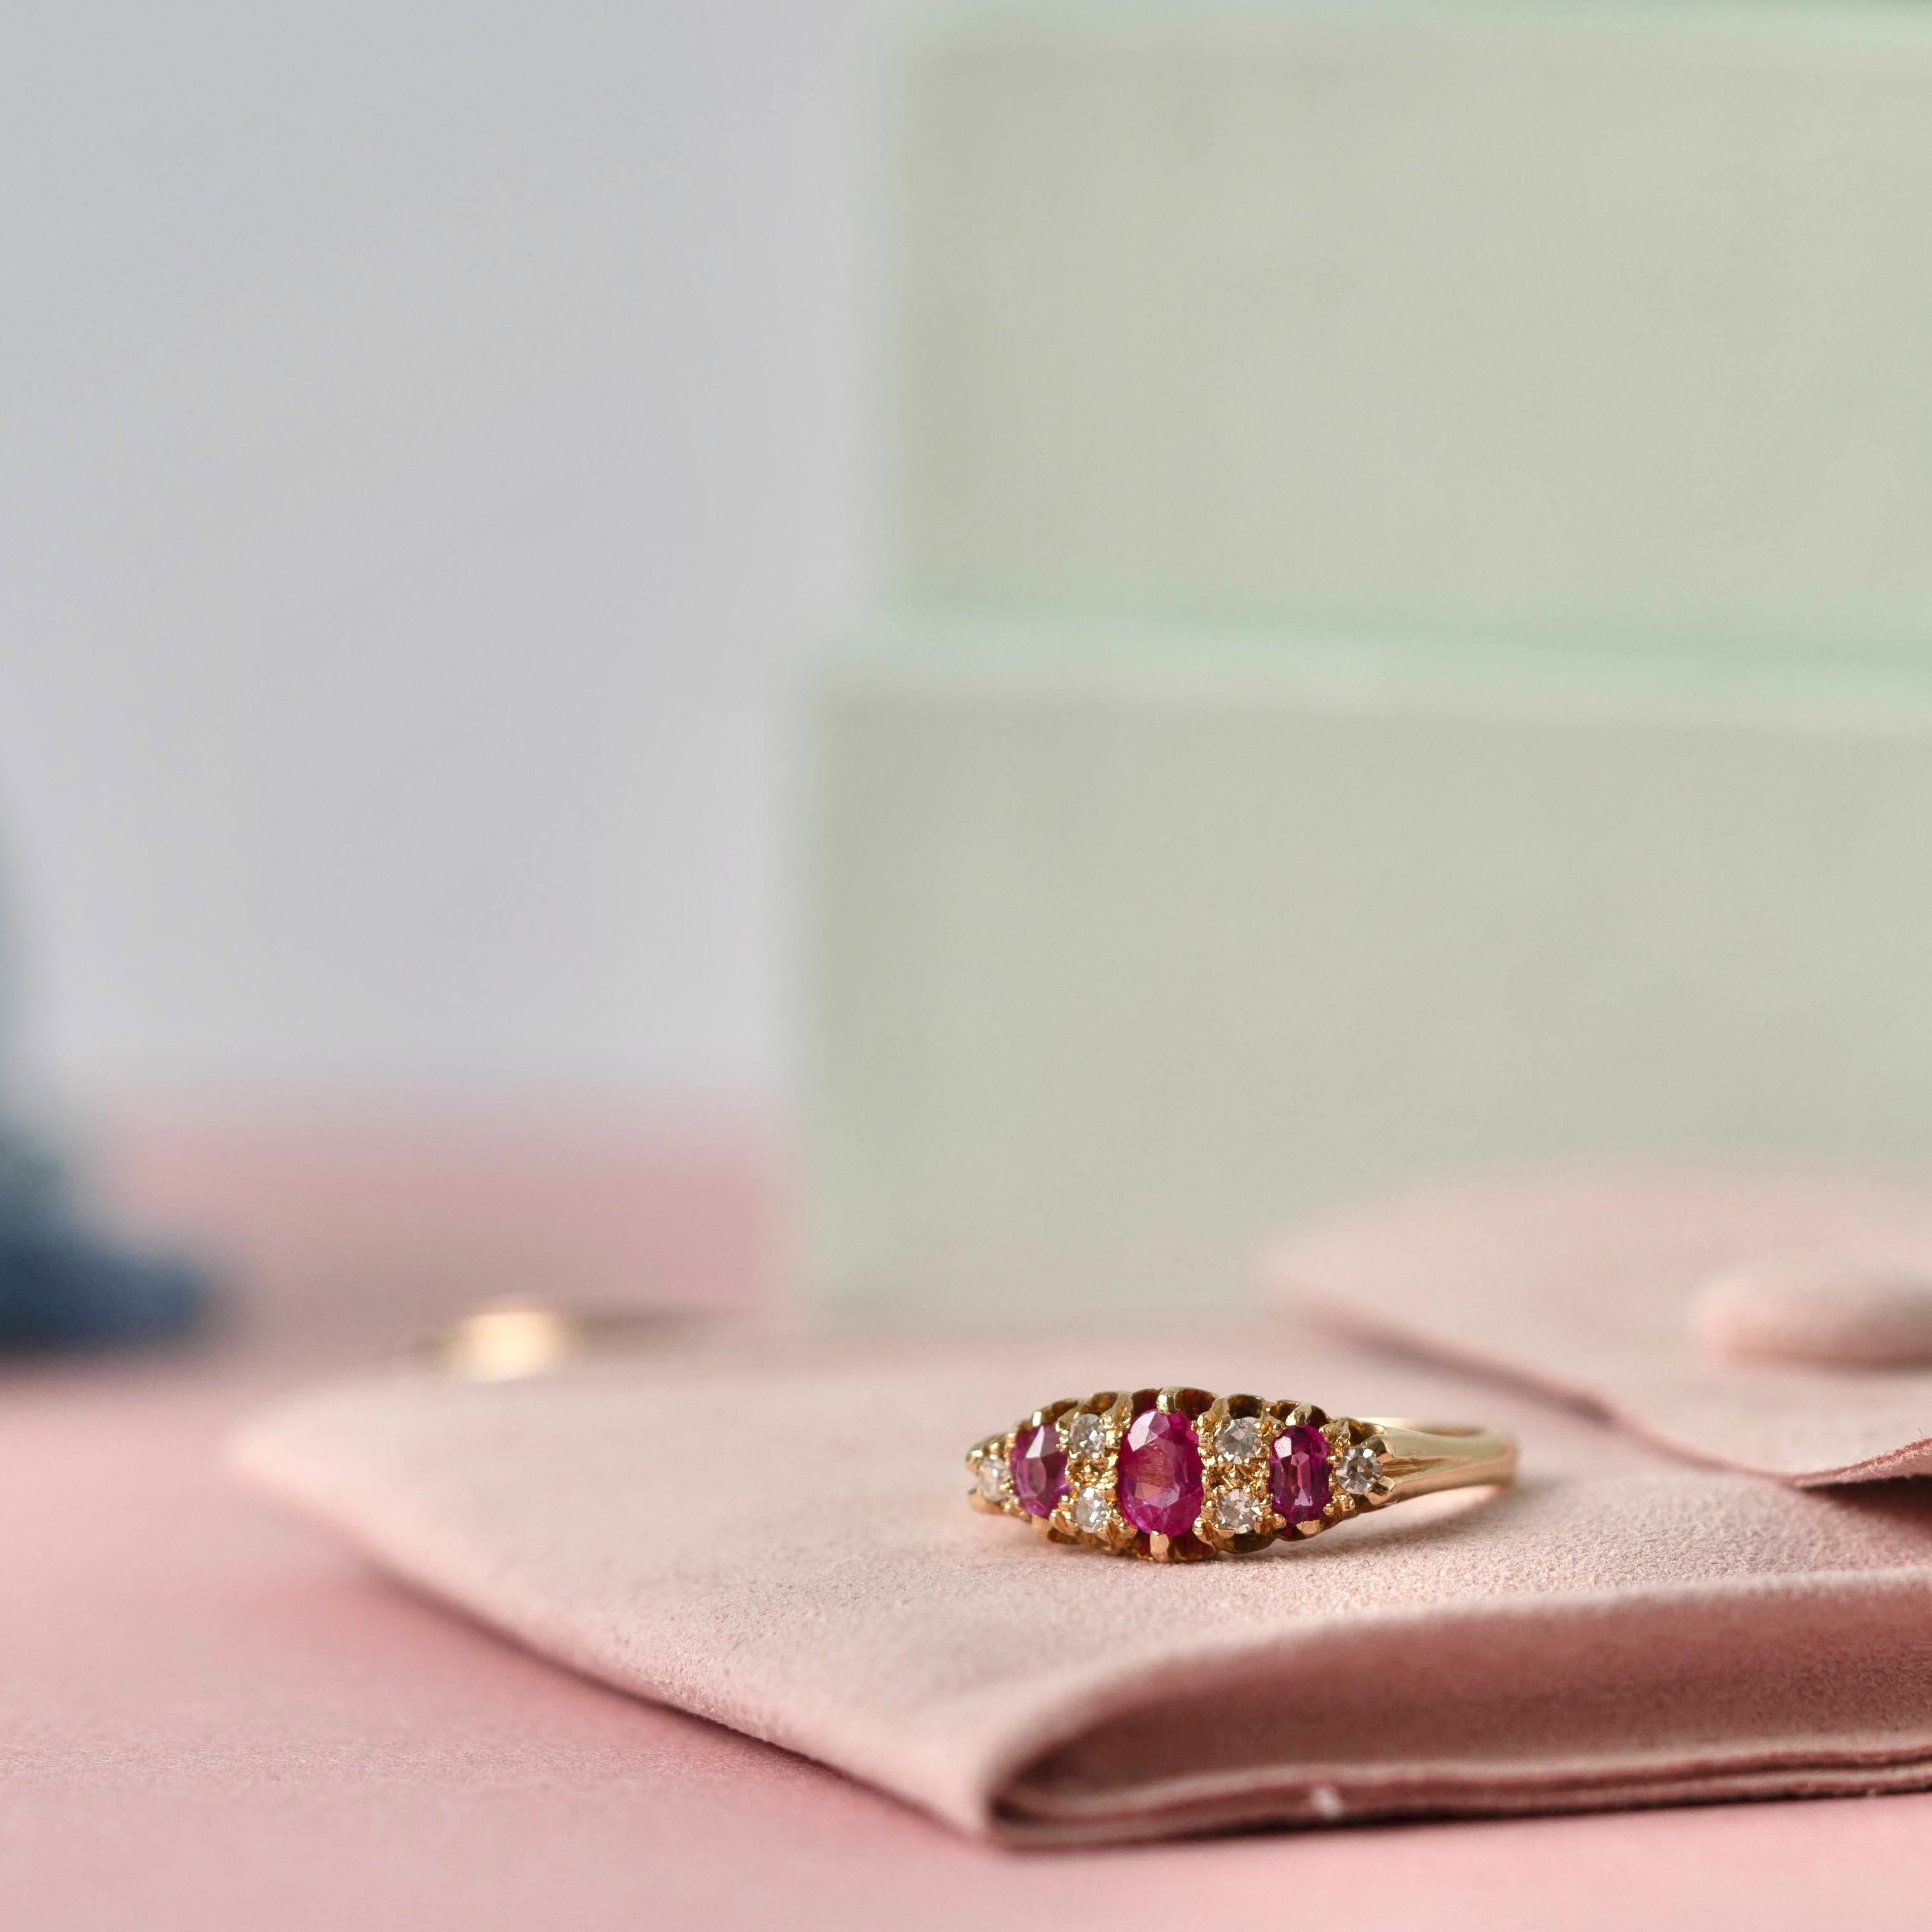 Ce superbe bijou est une représentation authentique de l'élégance Elegardienne, fabriquée en 1906. La bague présente un trio de rubis ovales éclatants, entrecoupés de diamants étincelants, créant un équilibre harmonieux de couleur et de brillance.